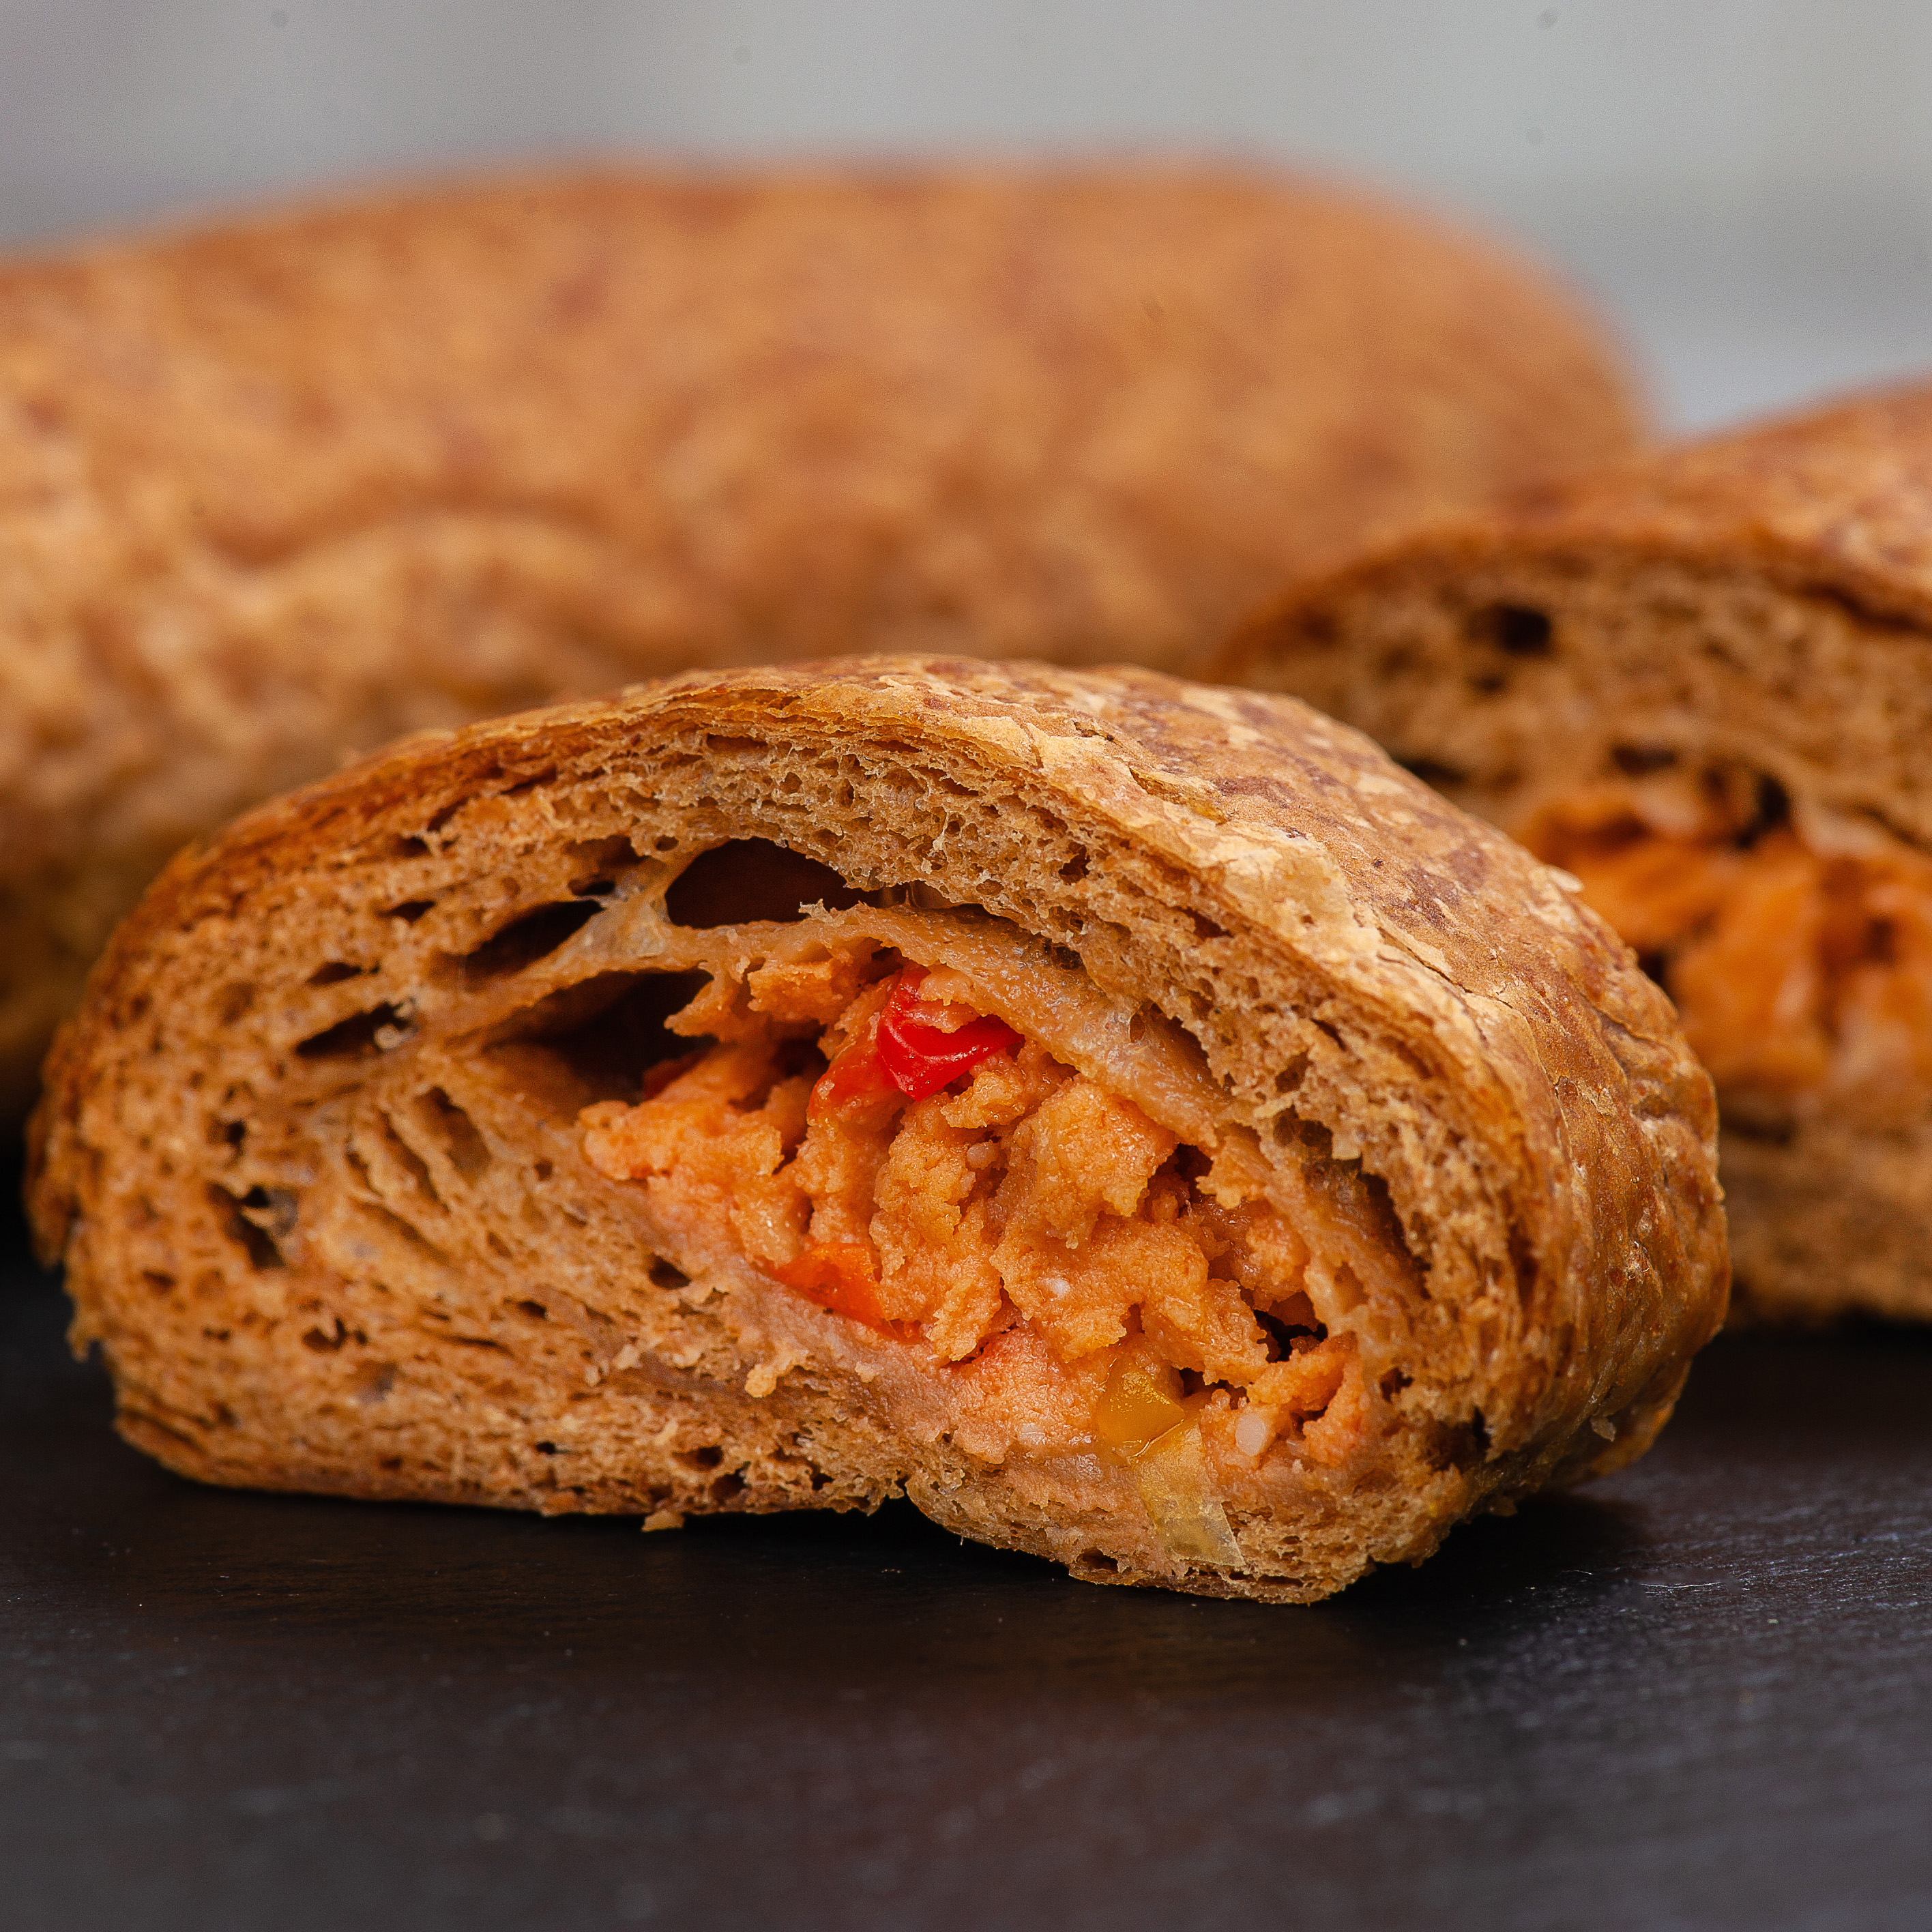 Ржано-пшеничное слоеное тесто с начинкой из куриного филе, запеченного болгарского перца, майонеза и томатной пасты. изображение 1